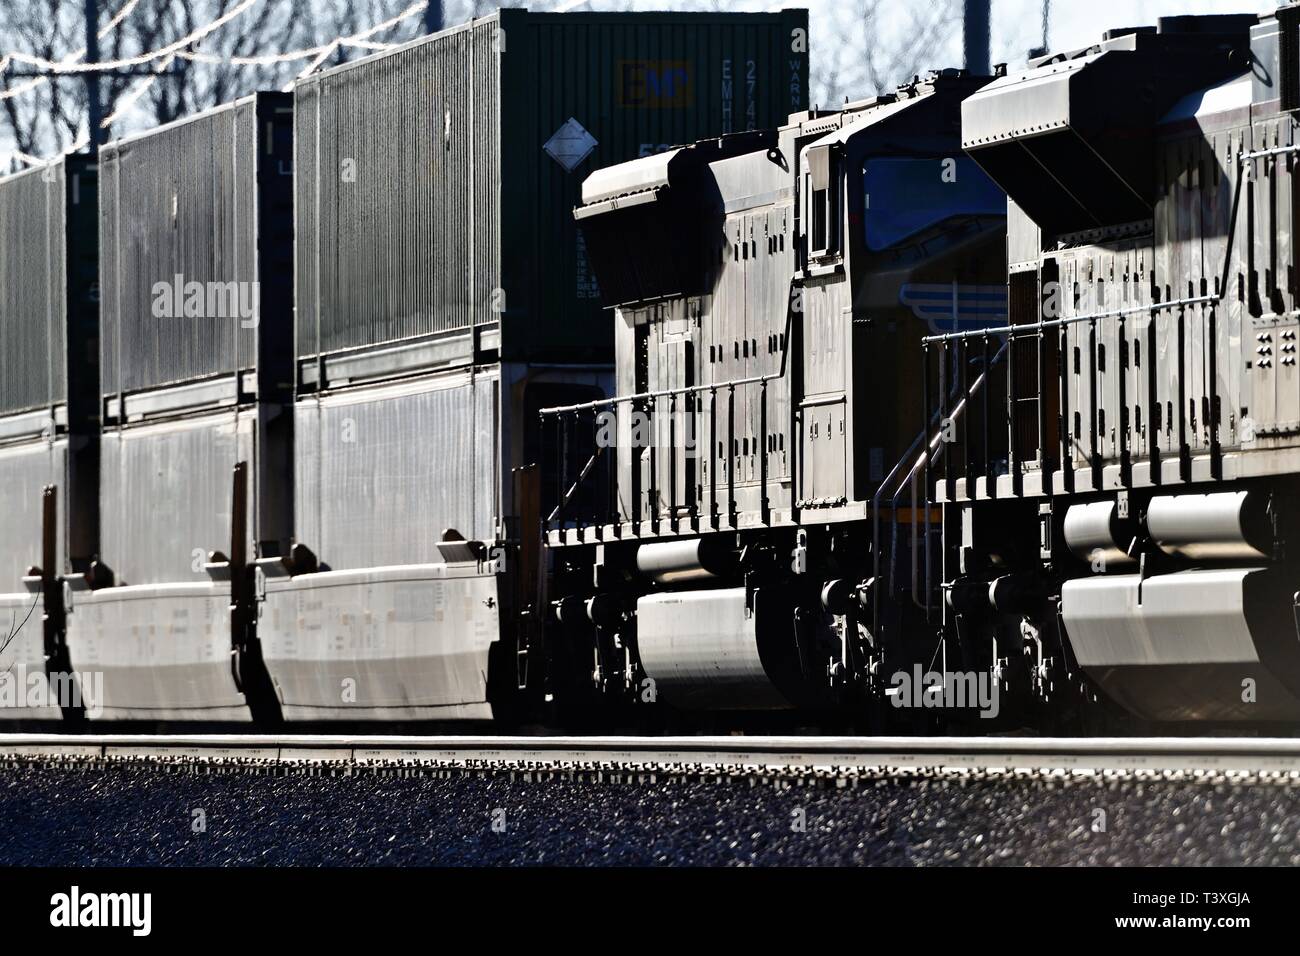 Genf, Illinois, USA. Das Finale eines Trios von Union Pacific Railroad Lokomotiven macht eine gemischte bestehen Fracht ostbound durch Genf, Illinois. Stockfoto